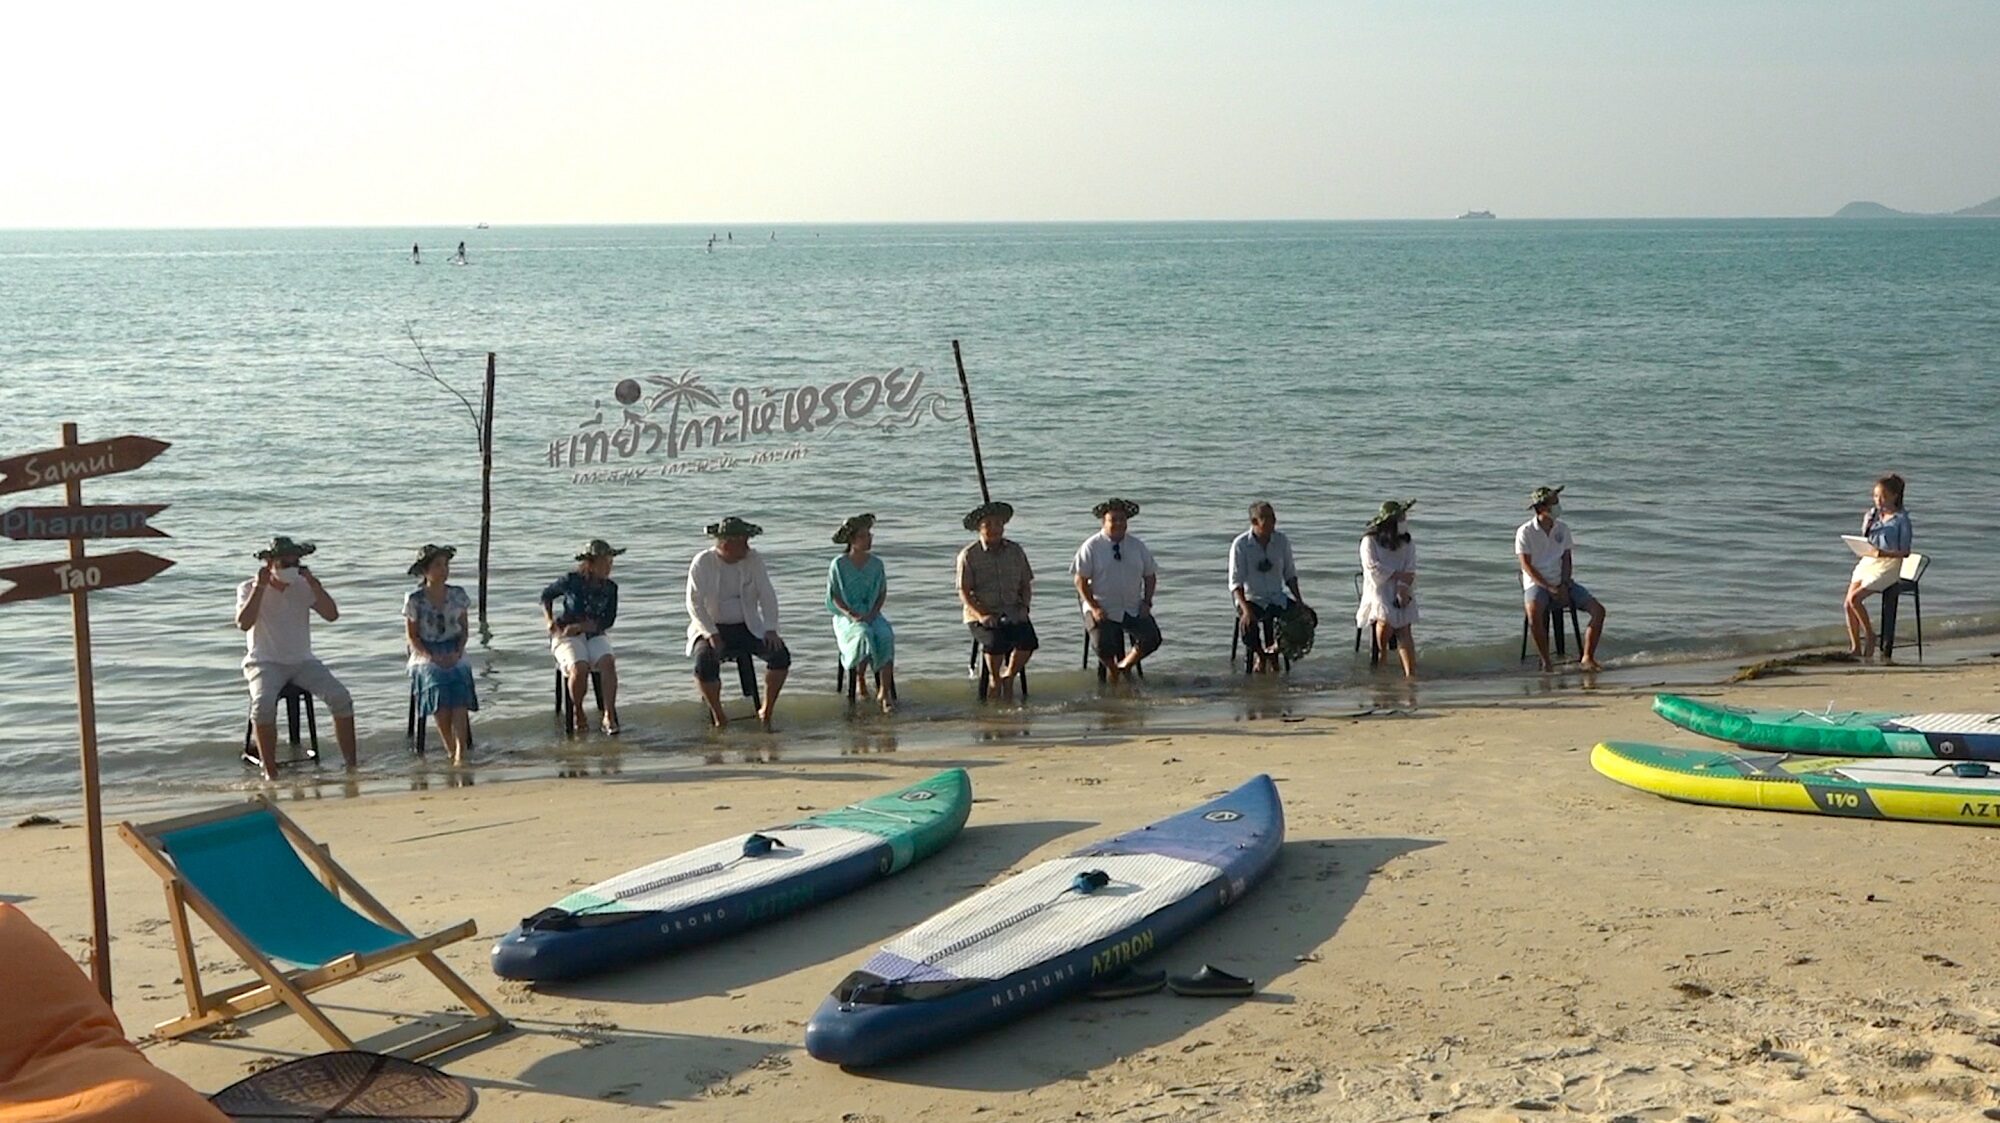 สมุย-พะงัน-เต่า เปิด "เที่ยวเกาะให้หรอย" จัดโปรพิเศษแก่นักท่องเที่ยวไทย-ต่างชาติ